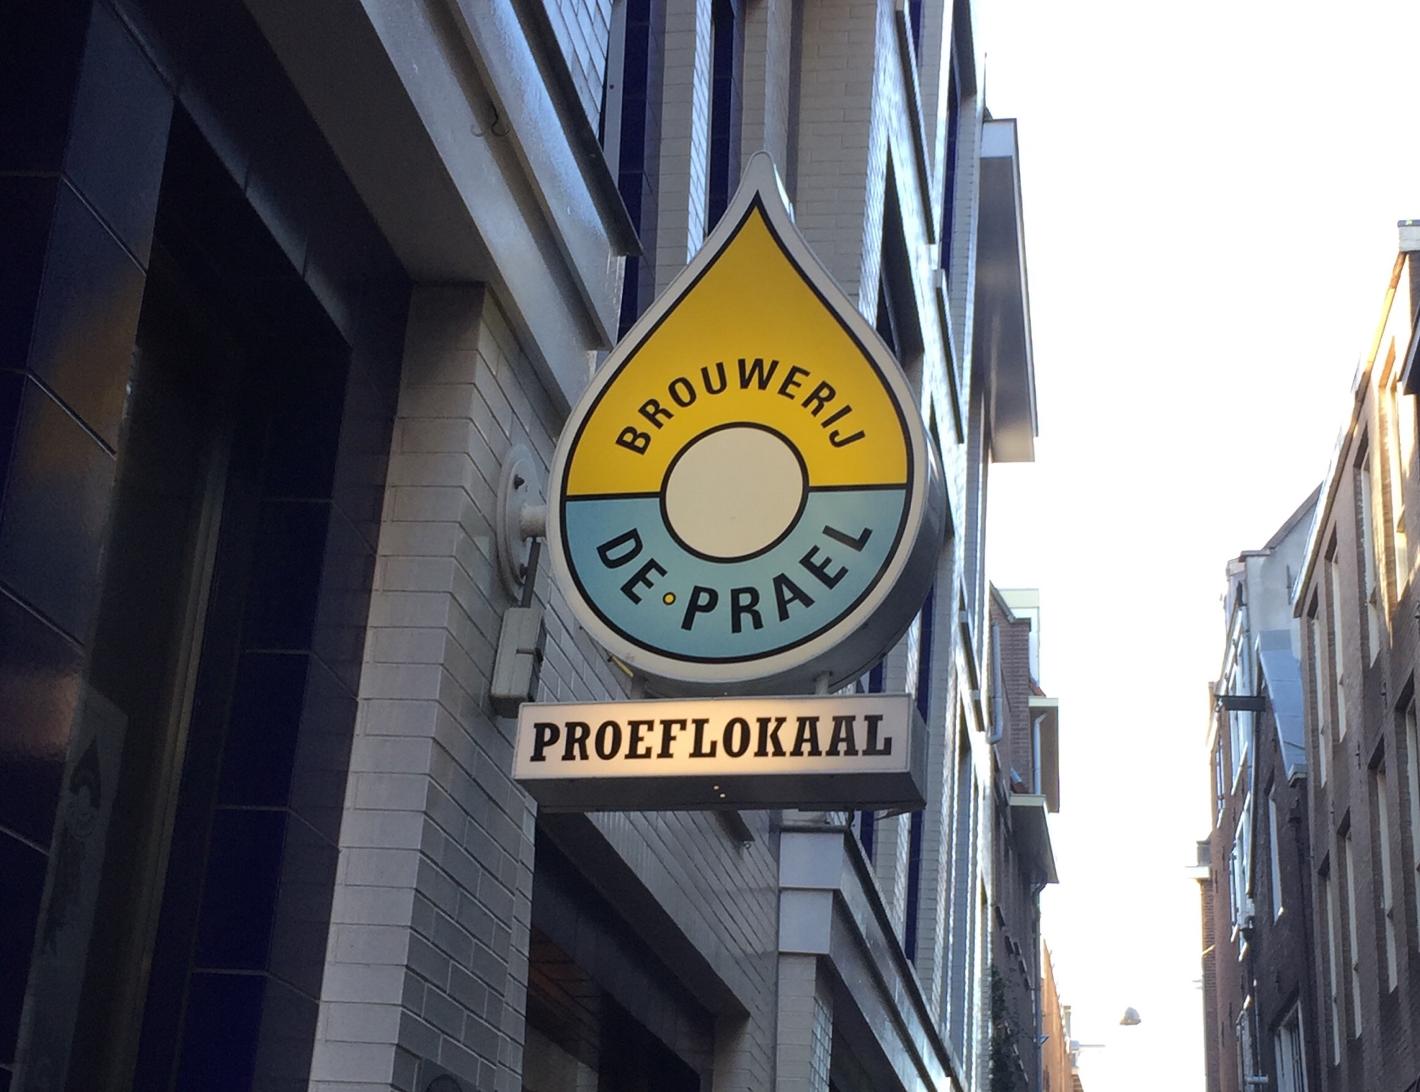 Foto Brouwerij de Prael in Amsterdam, Winkelen, Kado, Delicatesse, Borrel, Activiteit - #1